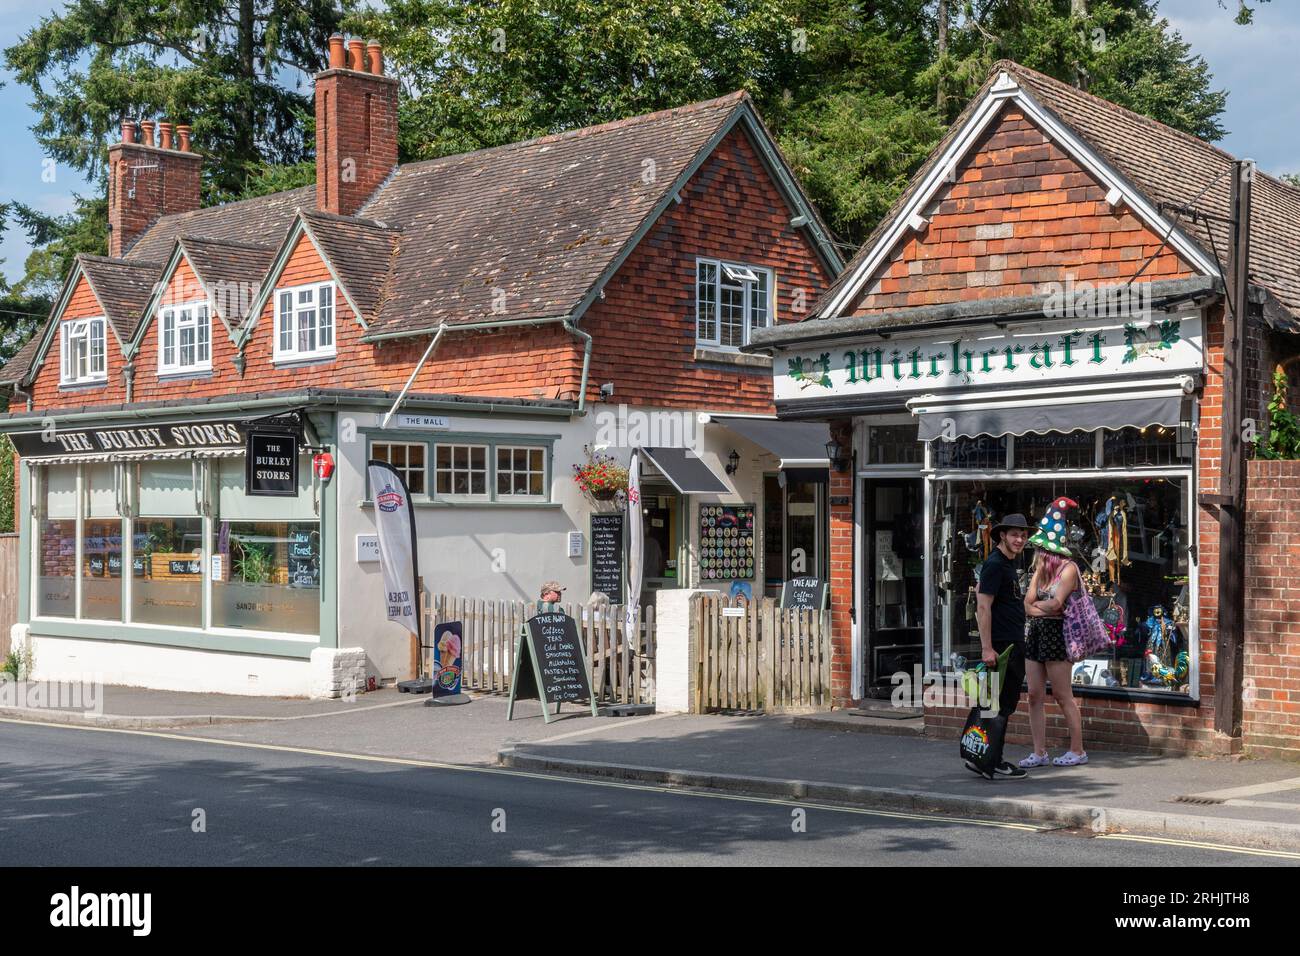 Les gens cherchent dans des magasins indépendants insolites dans le village de Burley dans le parc national de New Forest, Hampshire, Angleterre, Royaume-Uni, pendant l'été Banque D'Images